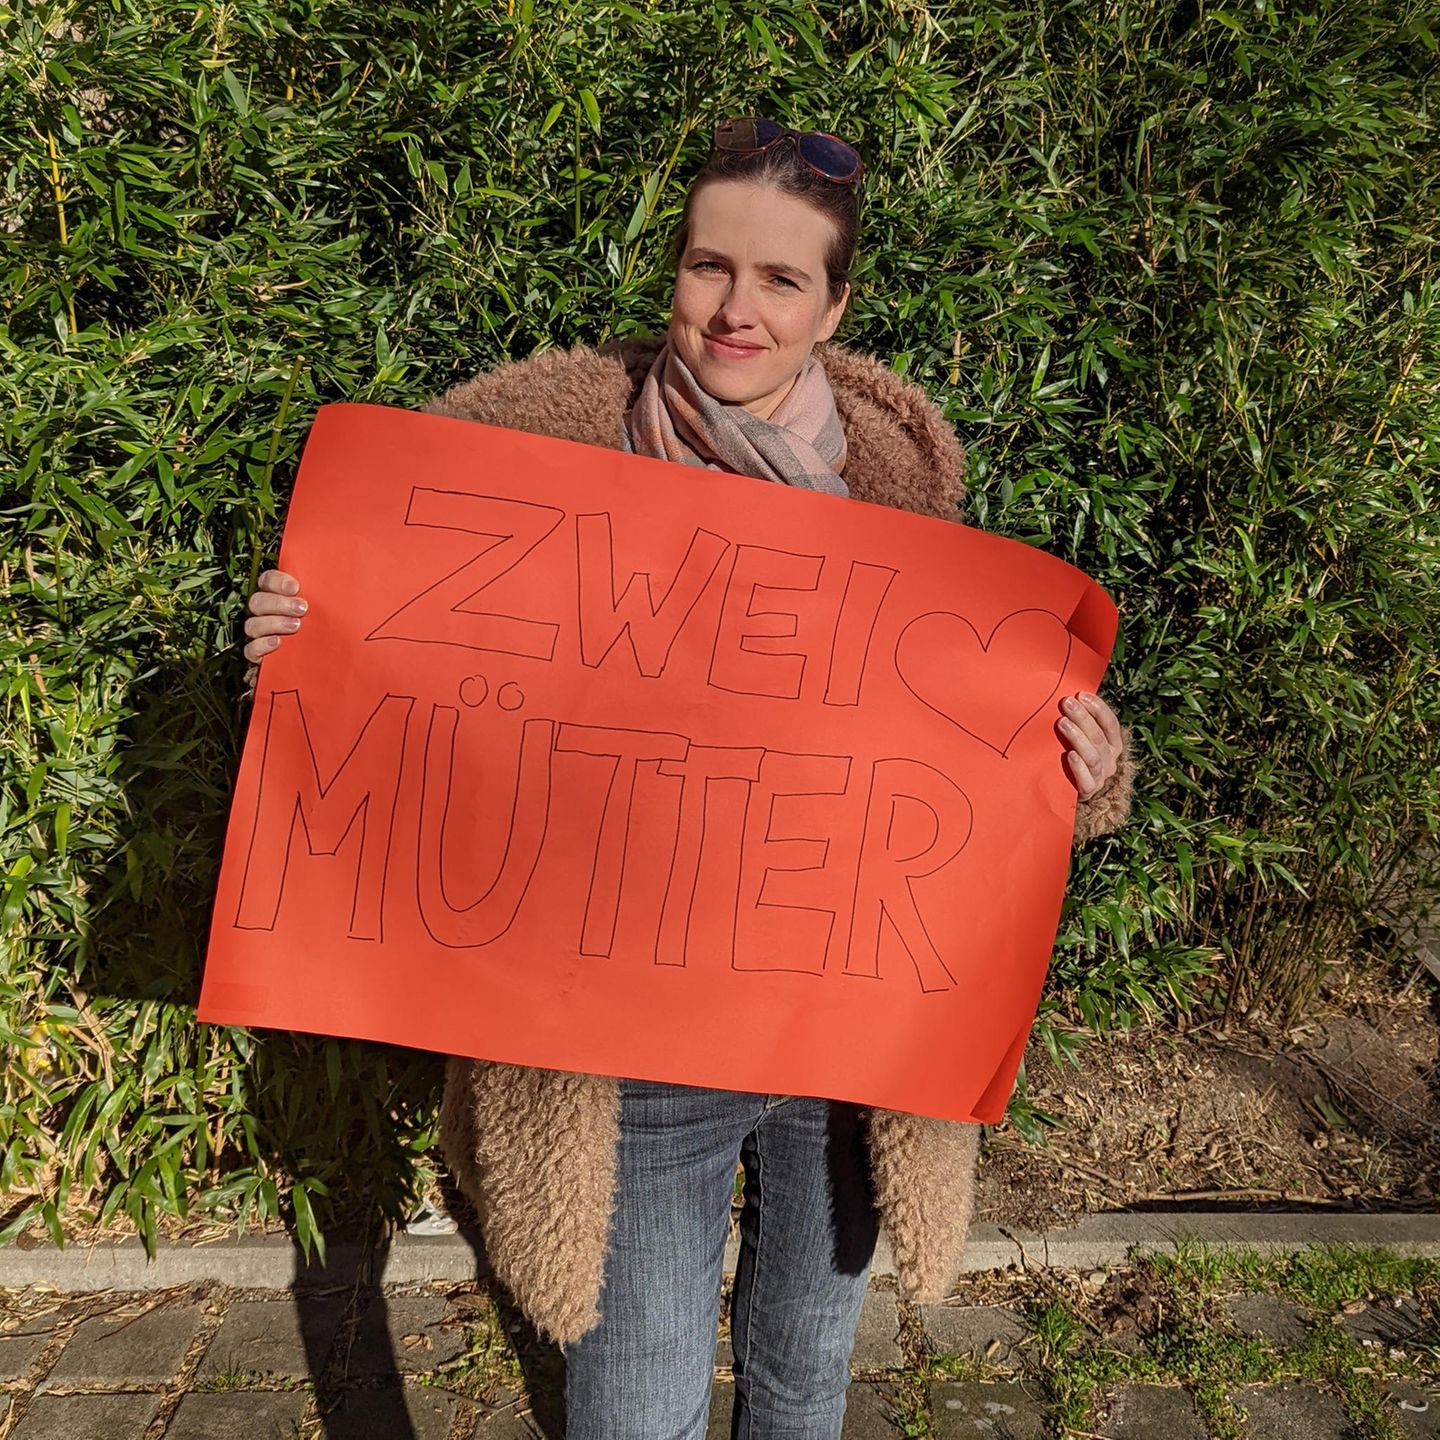 Weltfrauentag: Redakteurin Anna hält rotes Plakat mit der Aufschrift "Zwei Mütter"